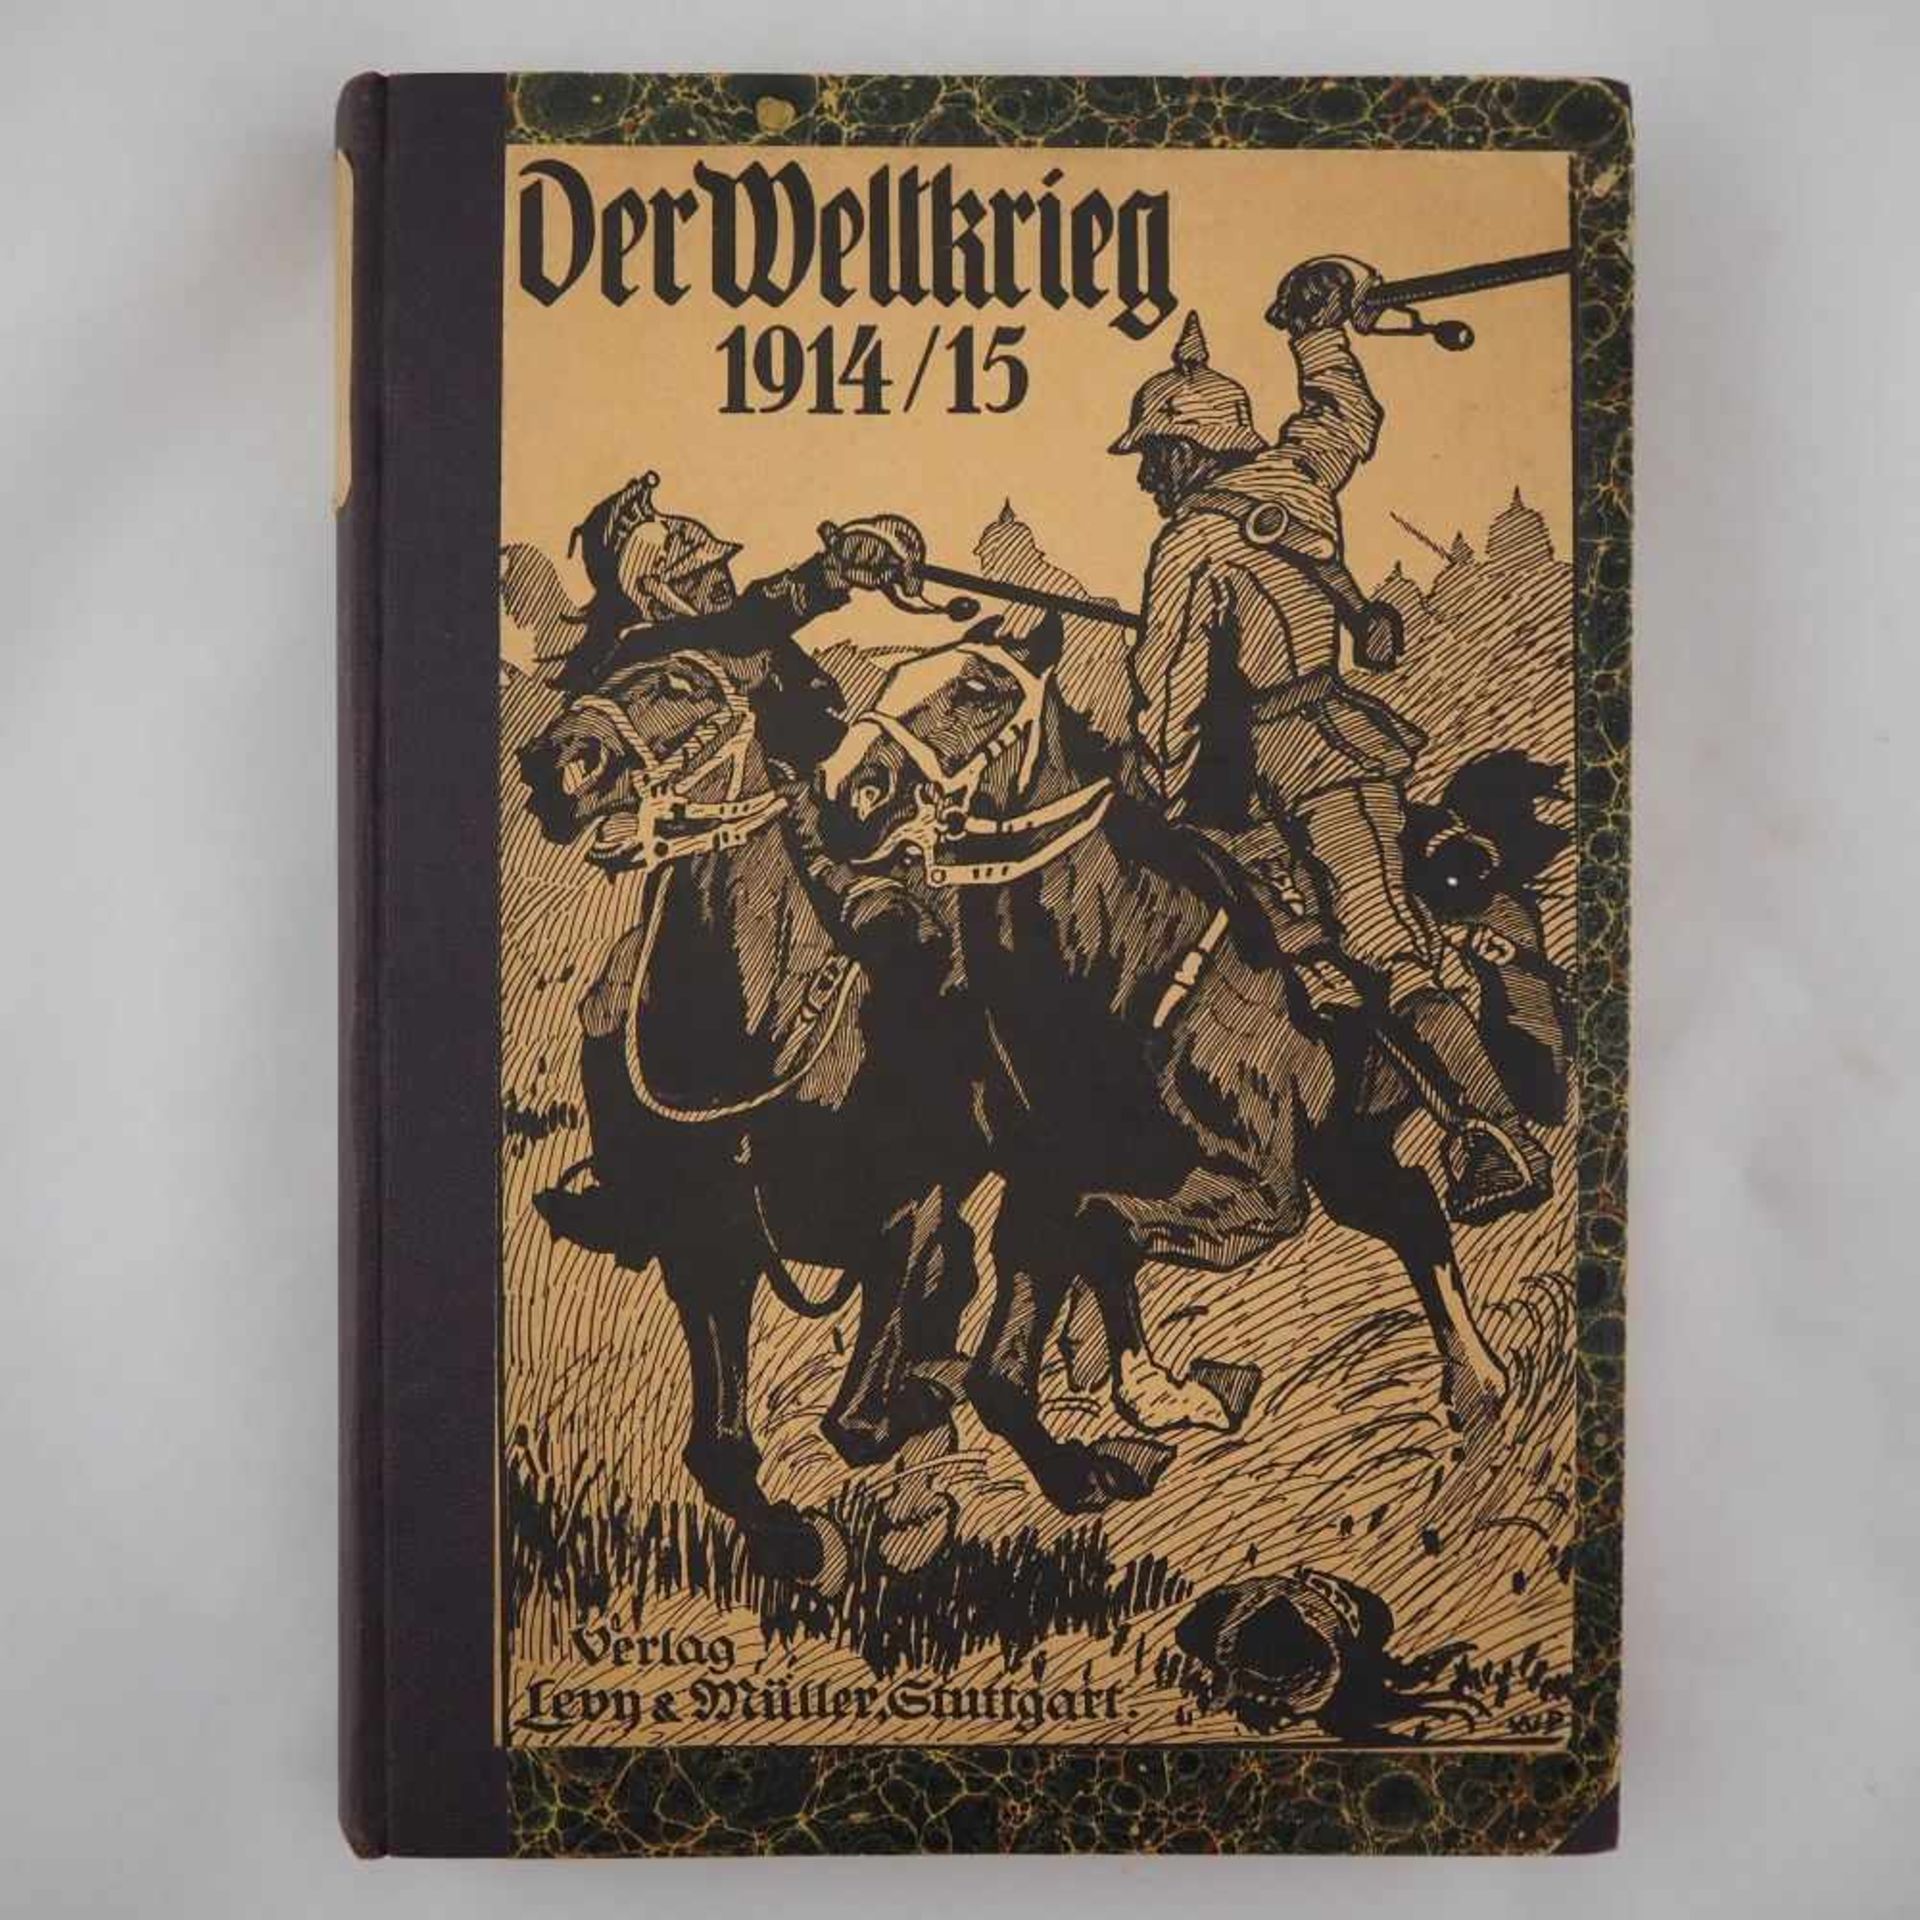 Buch, "Der Weltkrieg 1914/15"Verlag: Lern & Müller Stuttgart, mit zahlreichen Illustrationen, Format